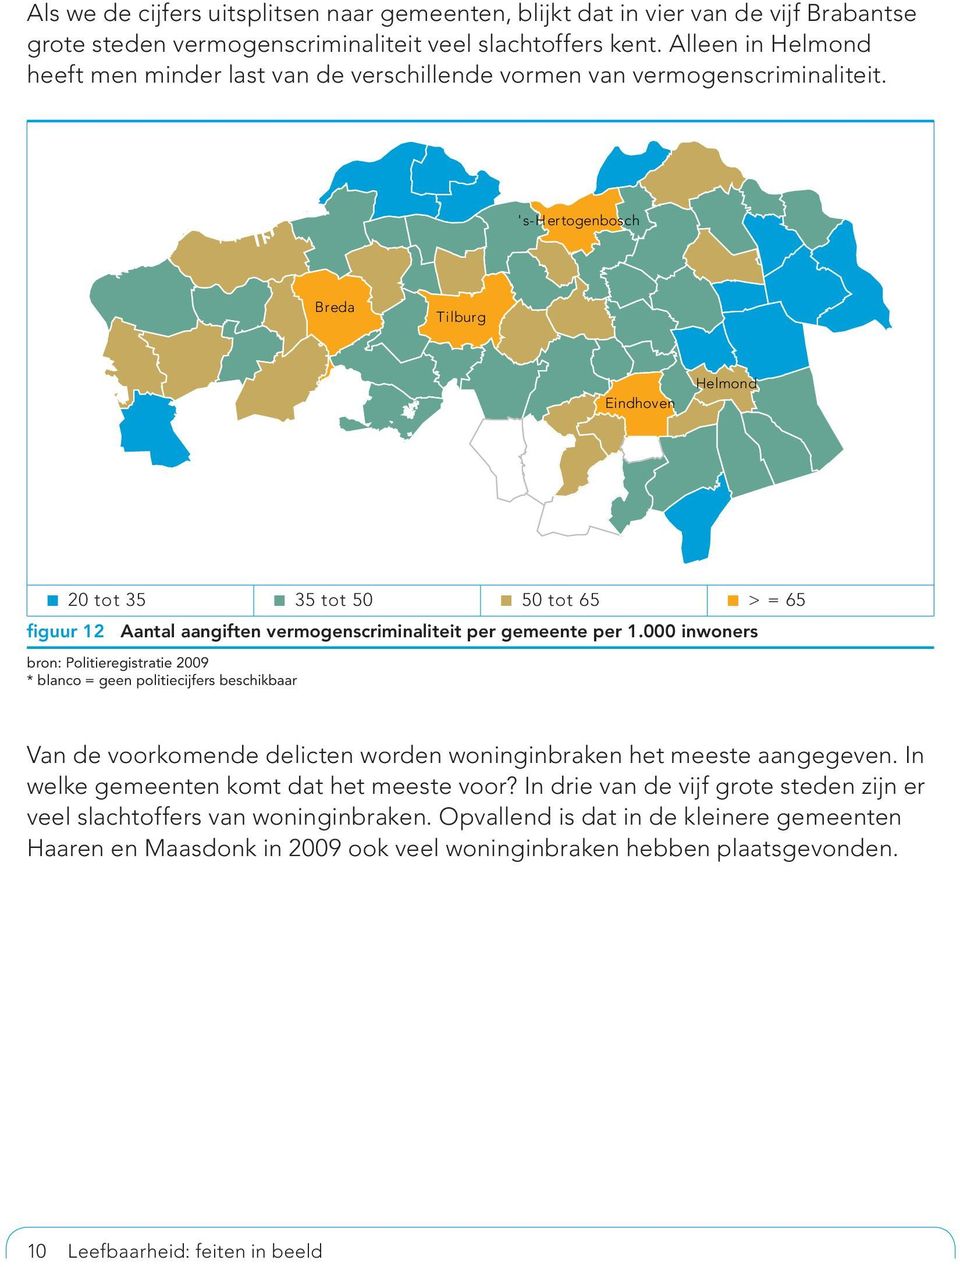 's-hertogenbosch Breda Tilburg Eindhoven Helmond 20 tot 35 35 tot 50 50 tot 65 > = 65 figuur 12 Aantal aangiften vermogenscriminaliteit per gemeente per 1.